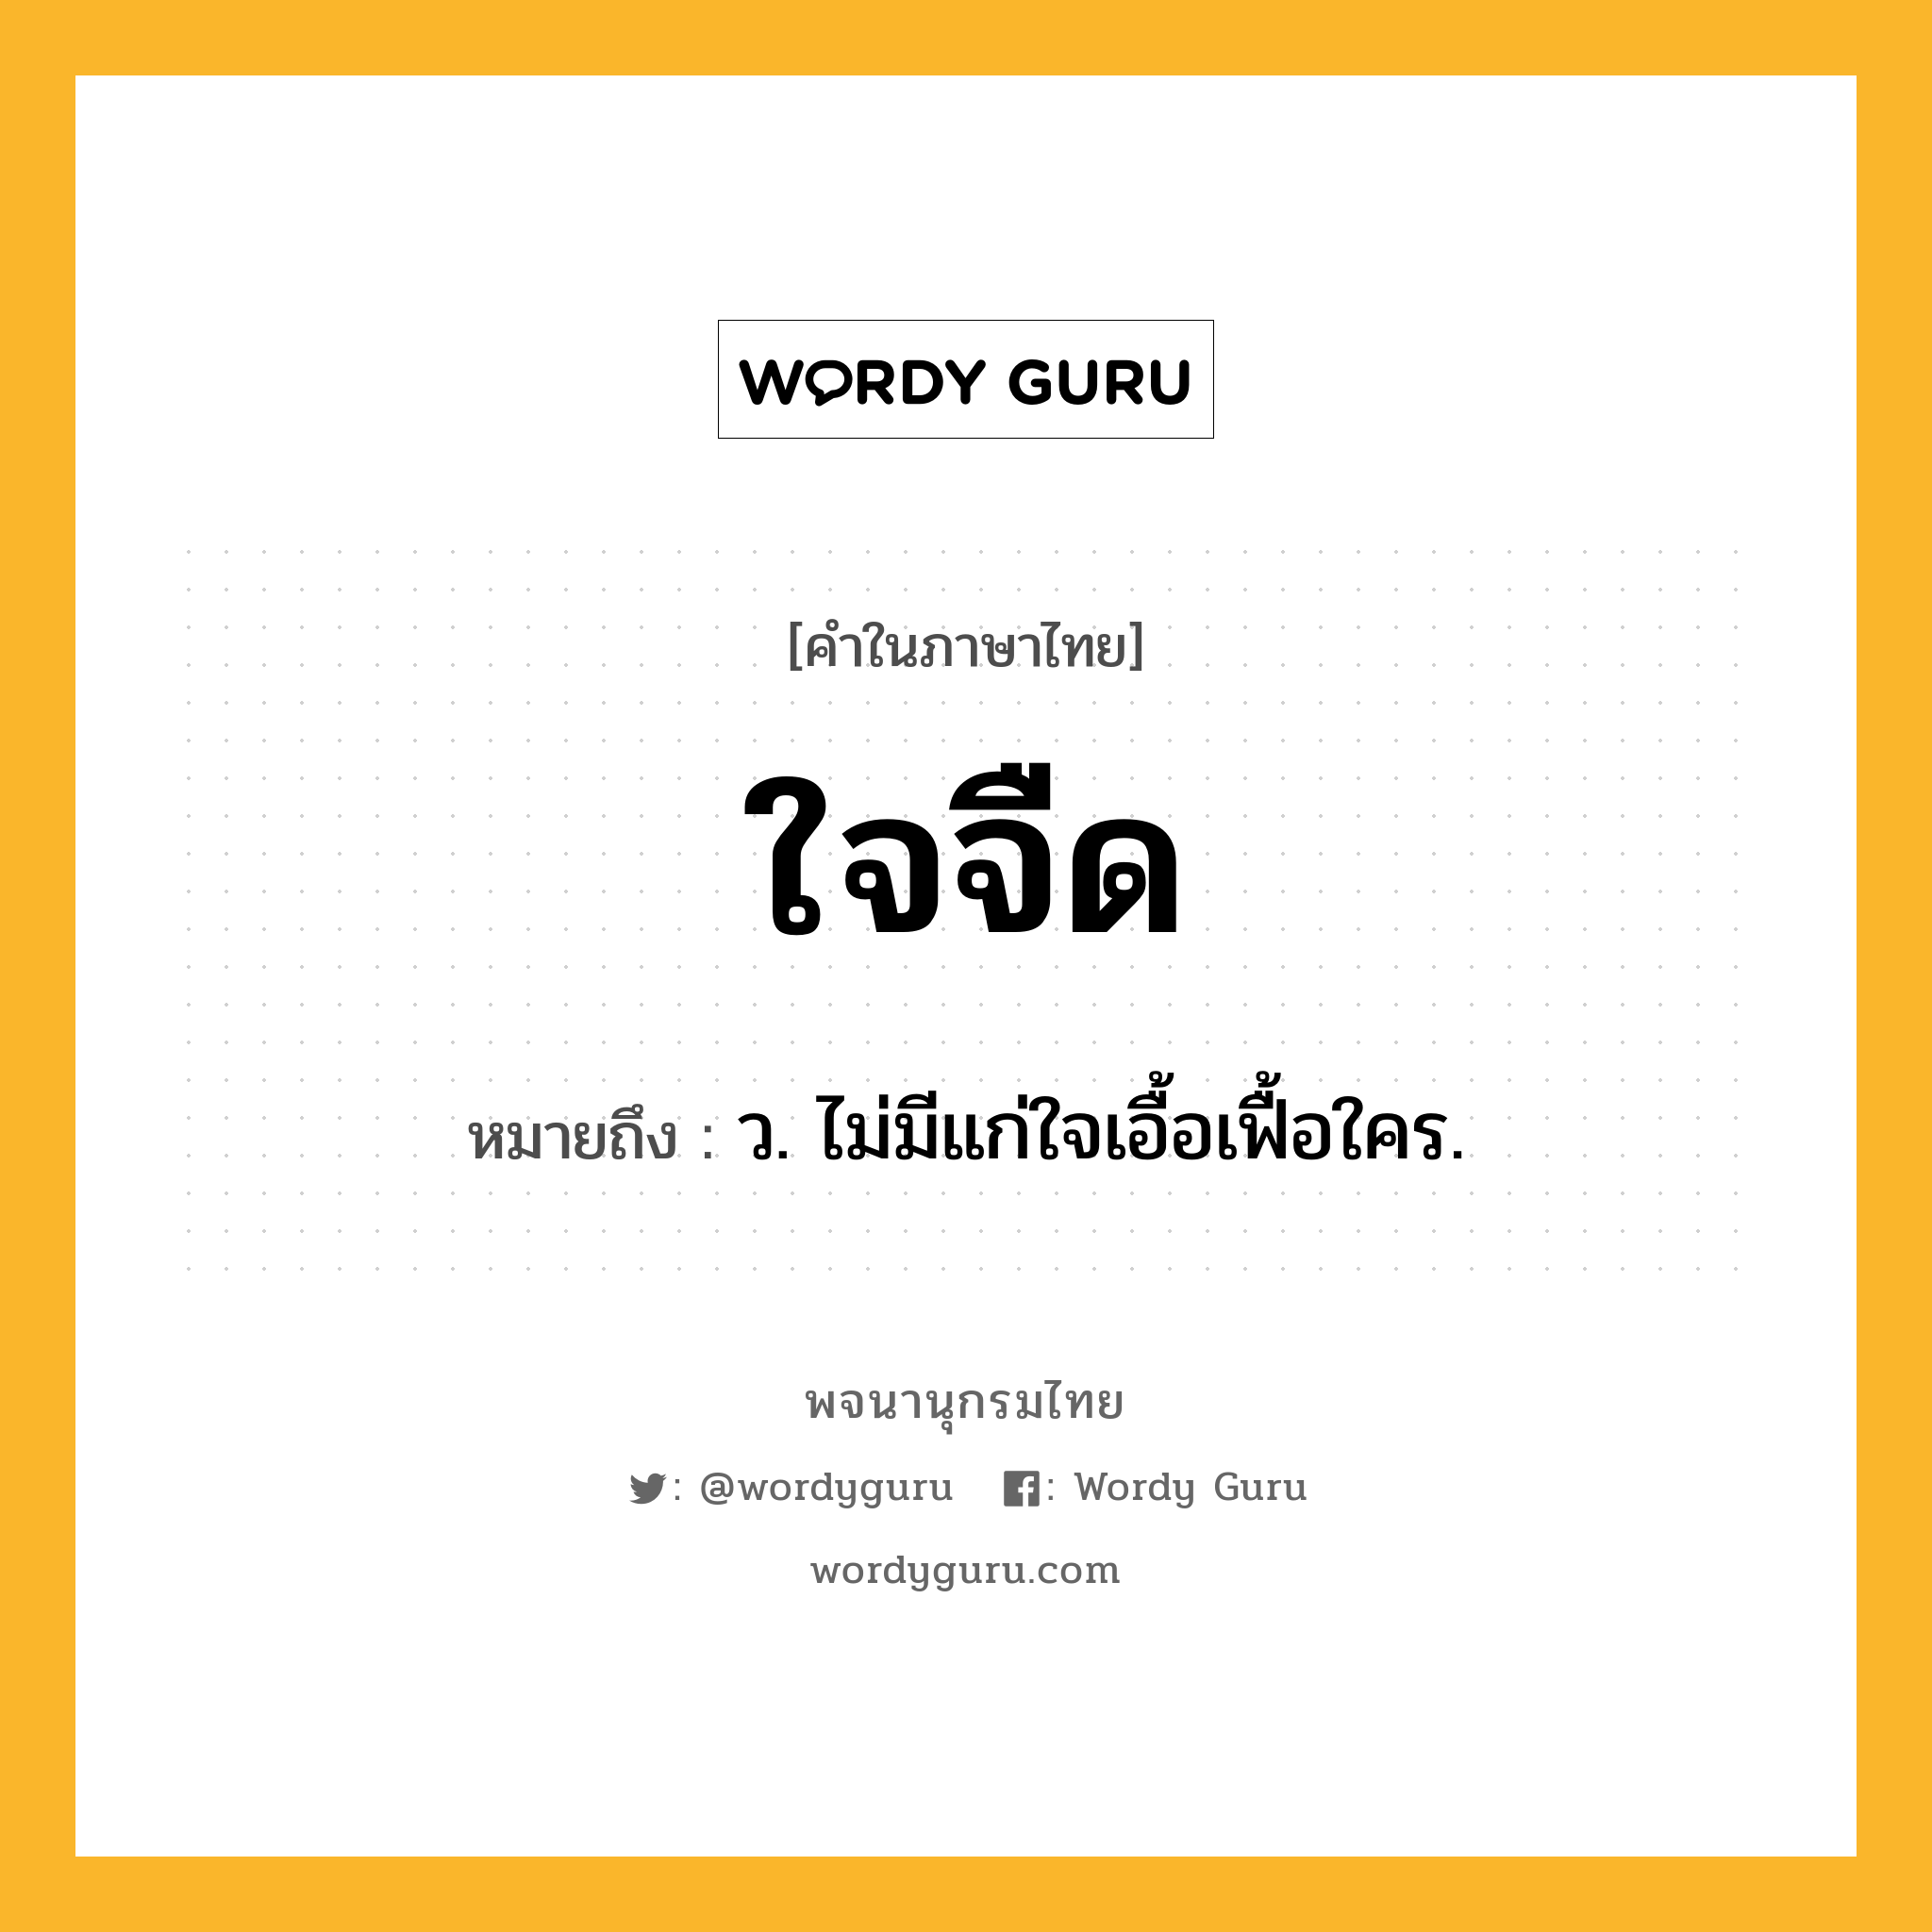 ใจจืด ความหมาย หมายถึงอะไร?, คำในภาษาไทย ใจจืด หมายถึง ว. ไม่มีแก่ใจเอื้อเฟื้อใคร.